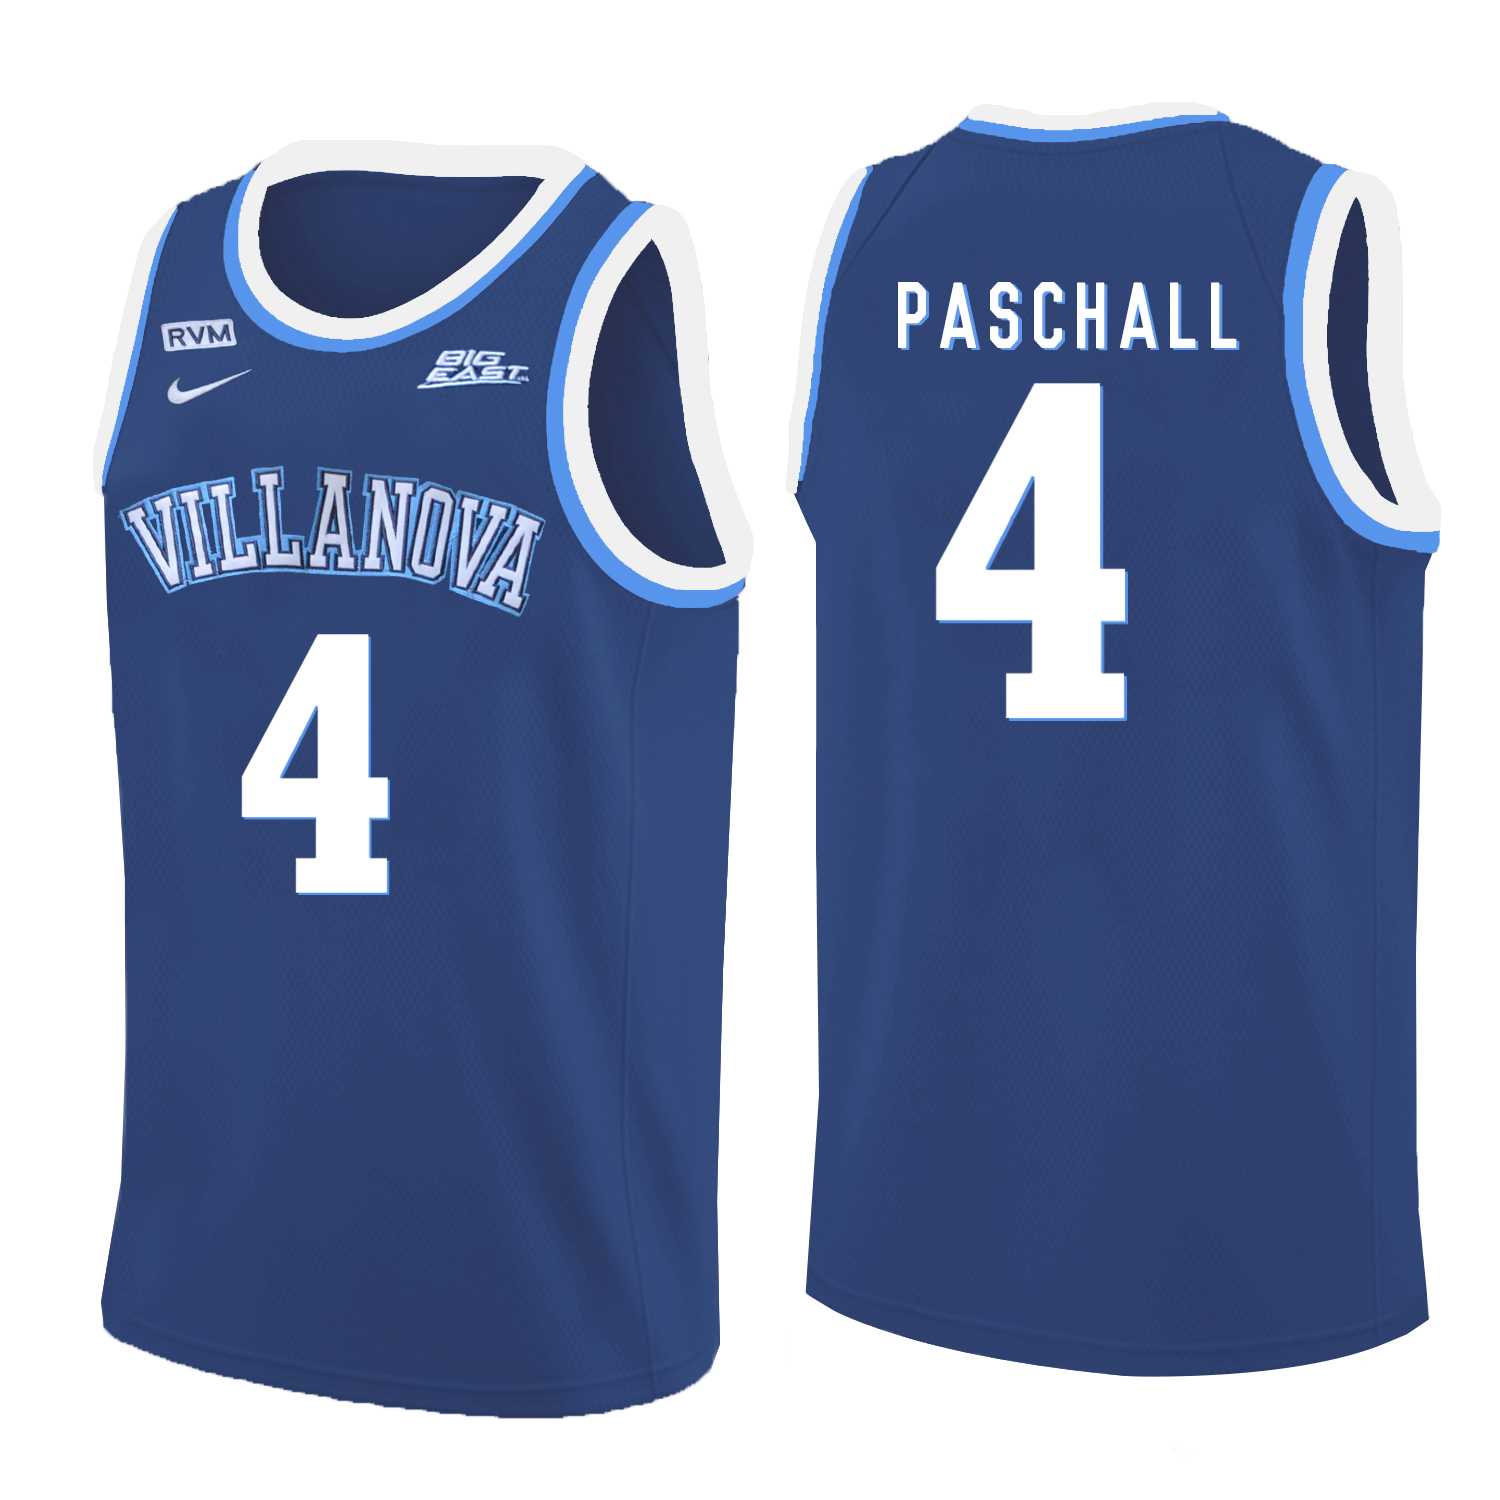 Villanova Wildcats #4 Eric Paschall Blue College Basketball Jersey